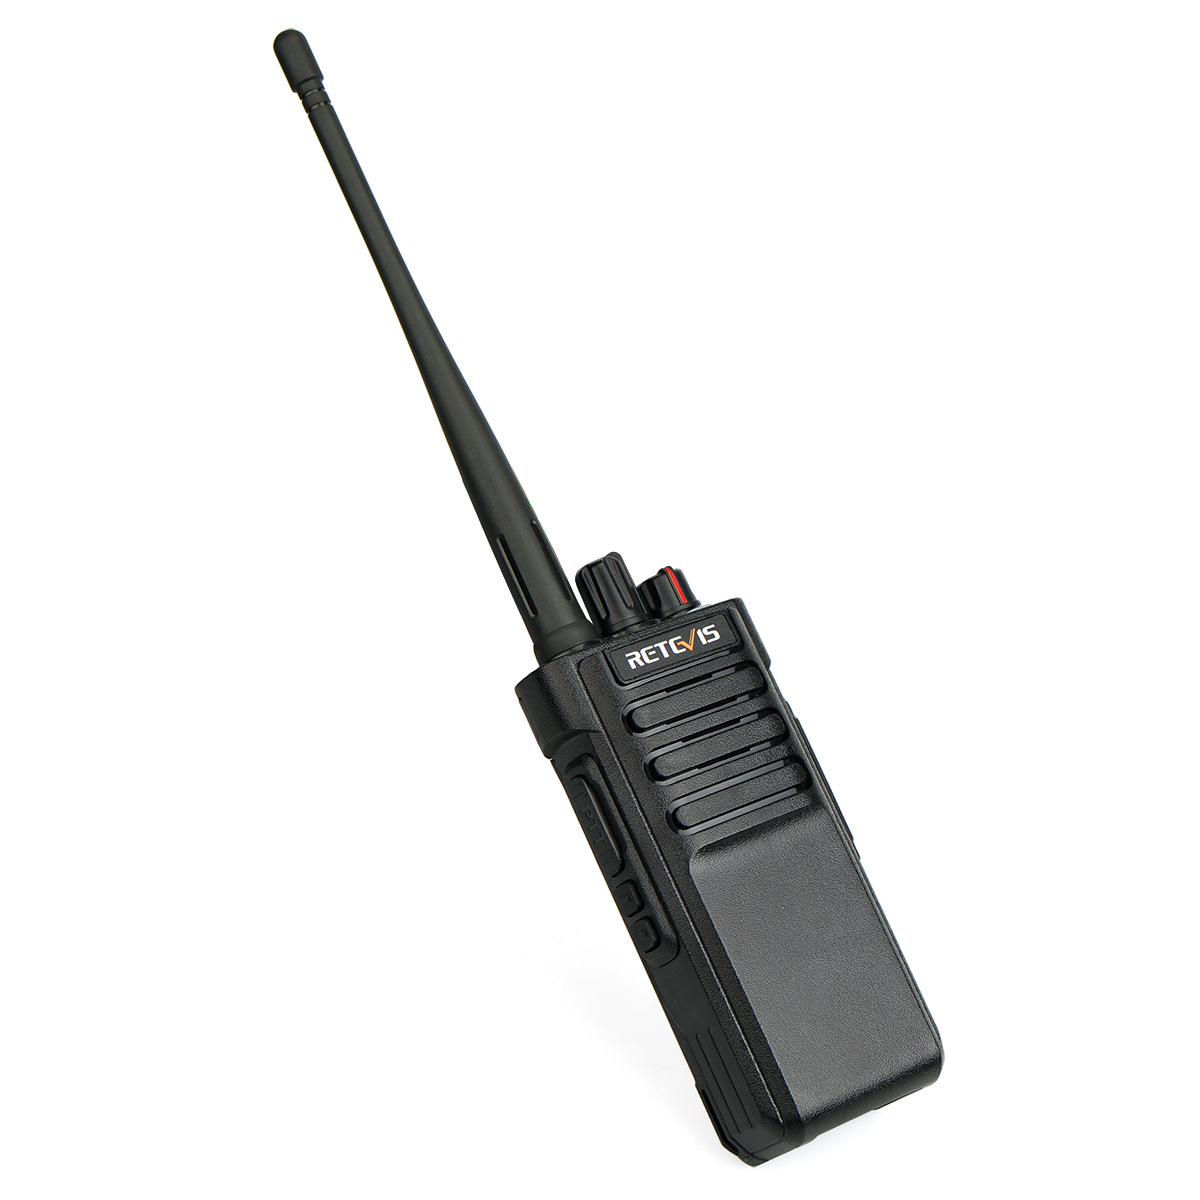 Retevis-RT29-16-Channels-400-480MHz-10W-Two-Way-Long-Range-Civilian-Handheld-Walkie-Talkie-1343628